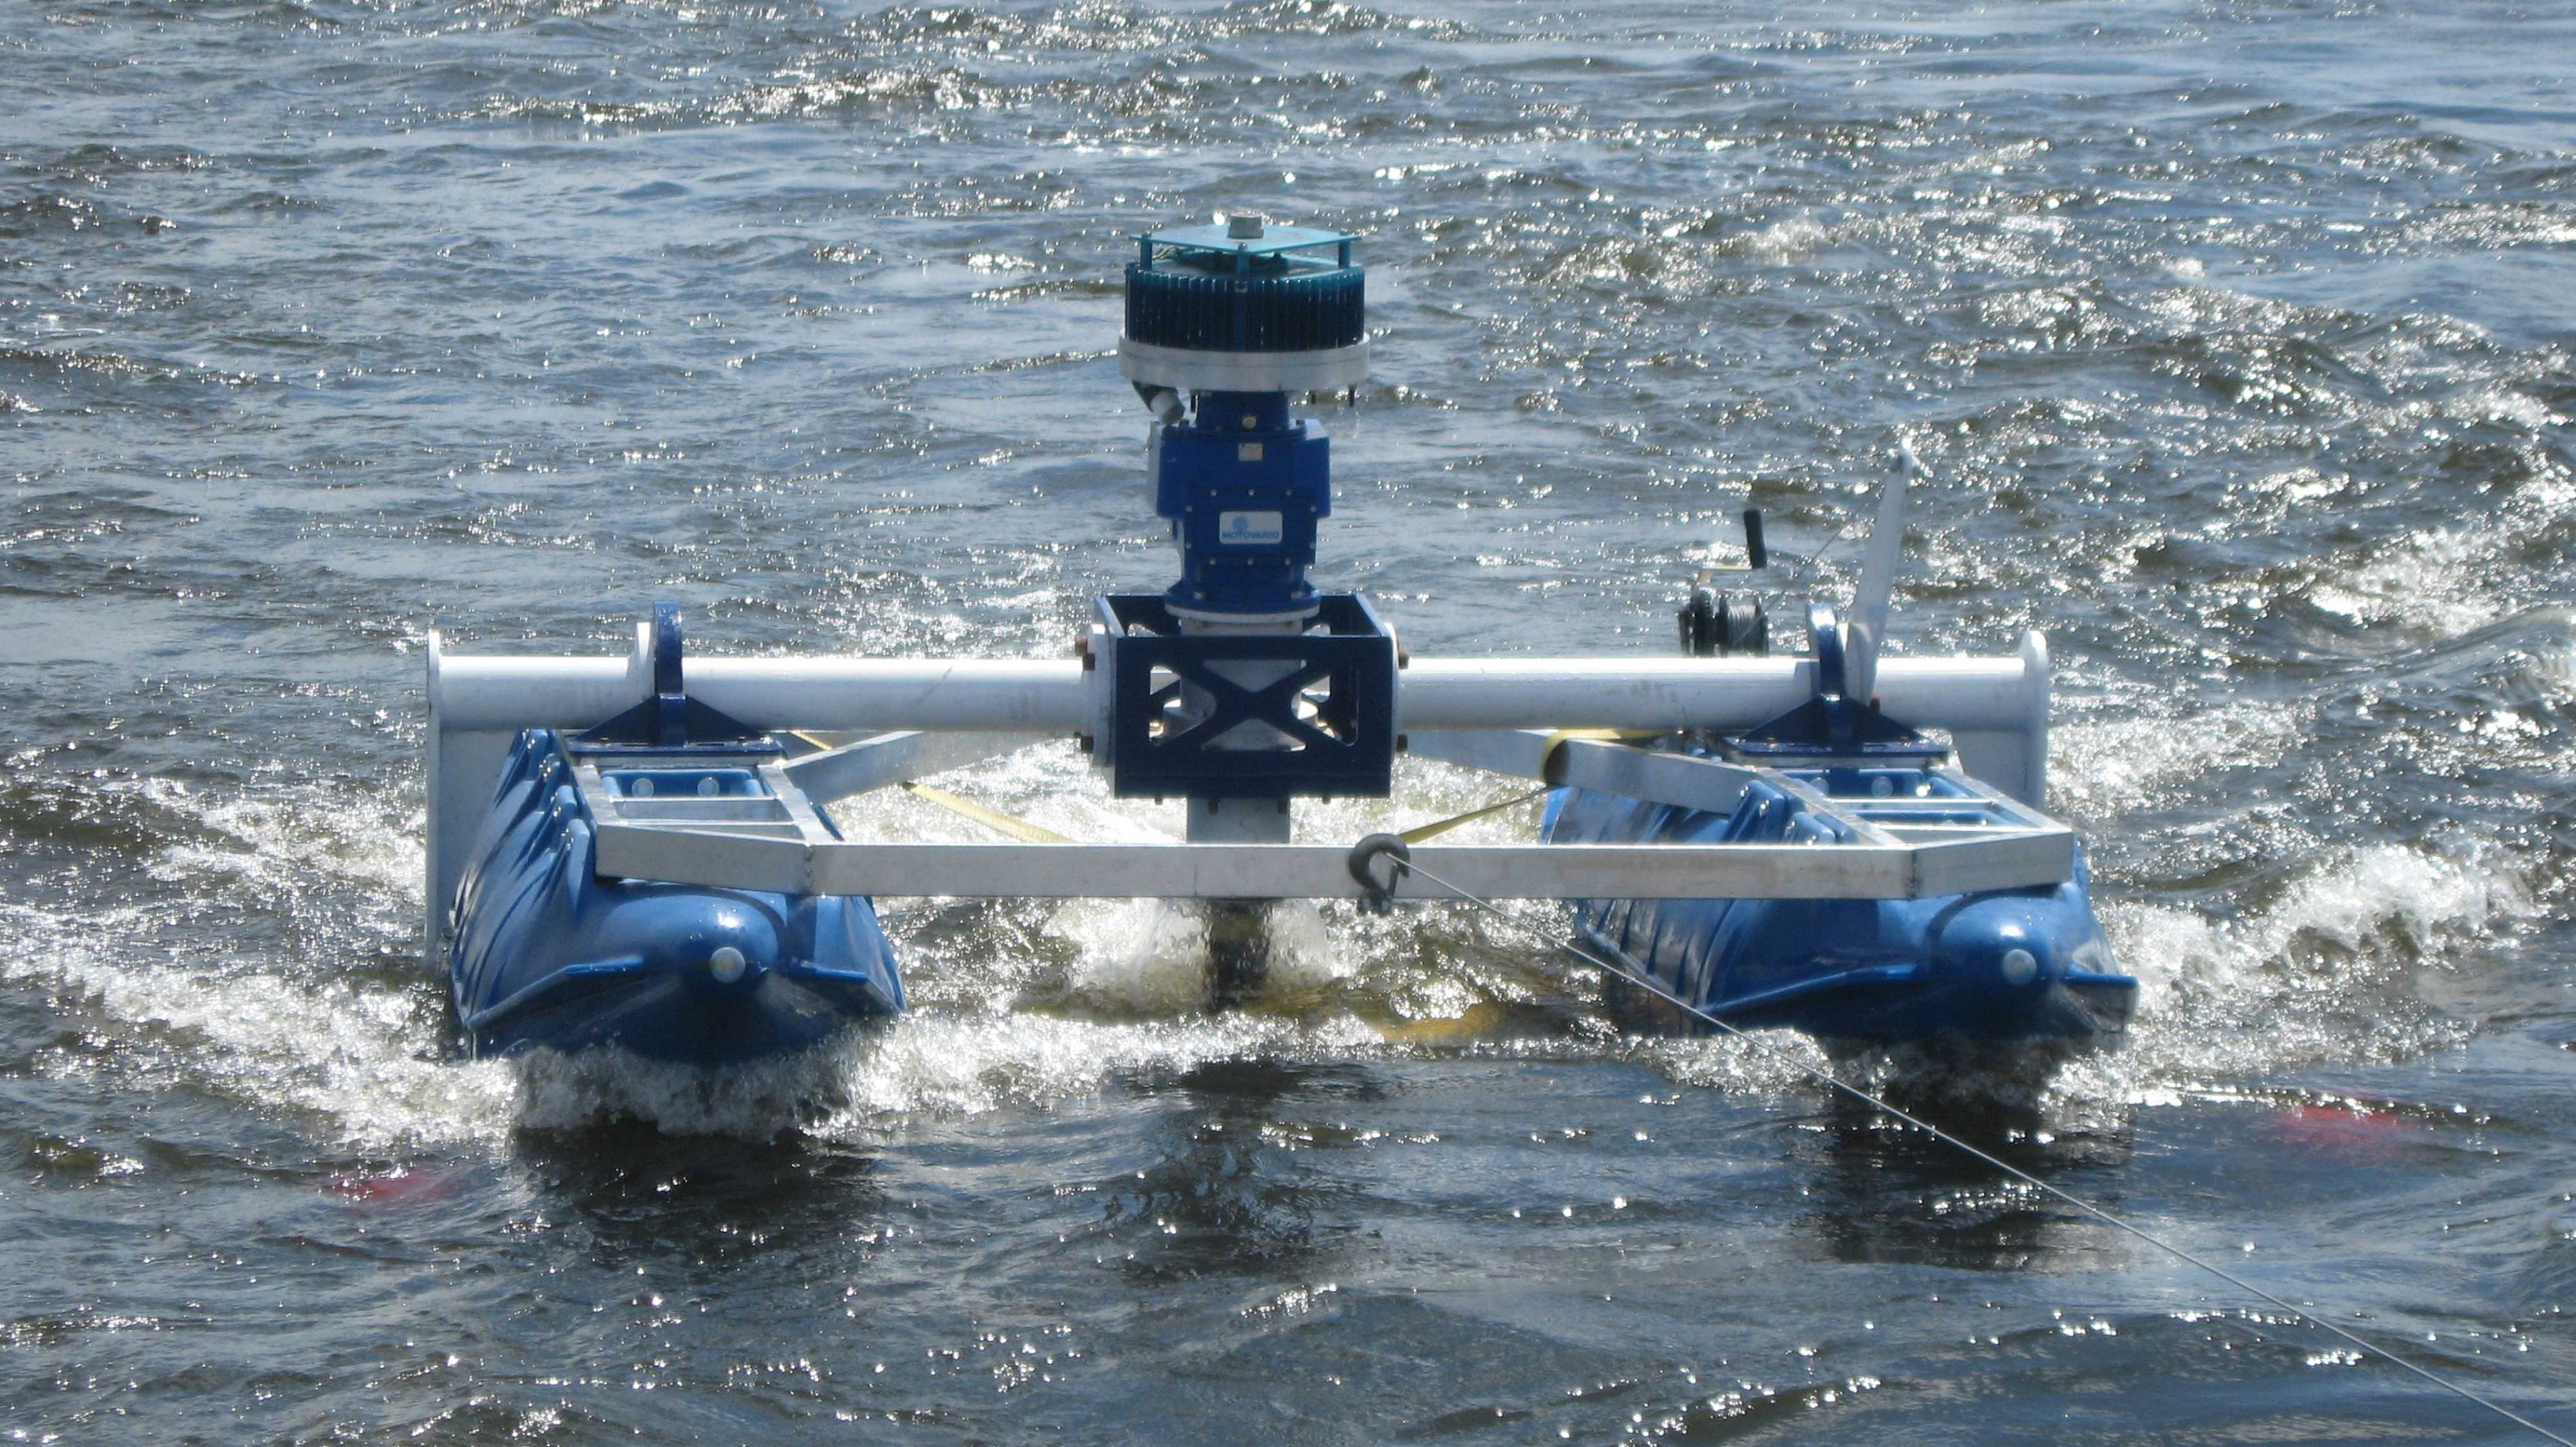 Image de turbine à axe vertical à la surface de l’eau.